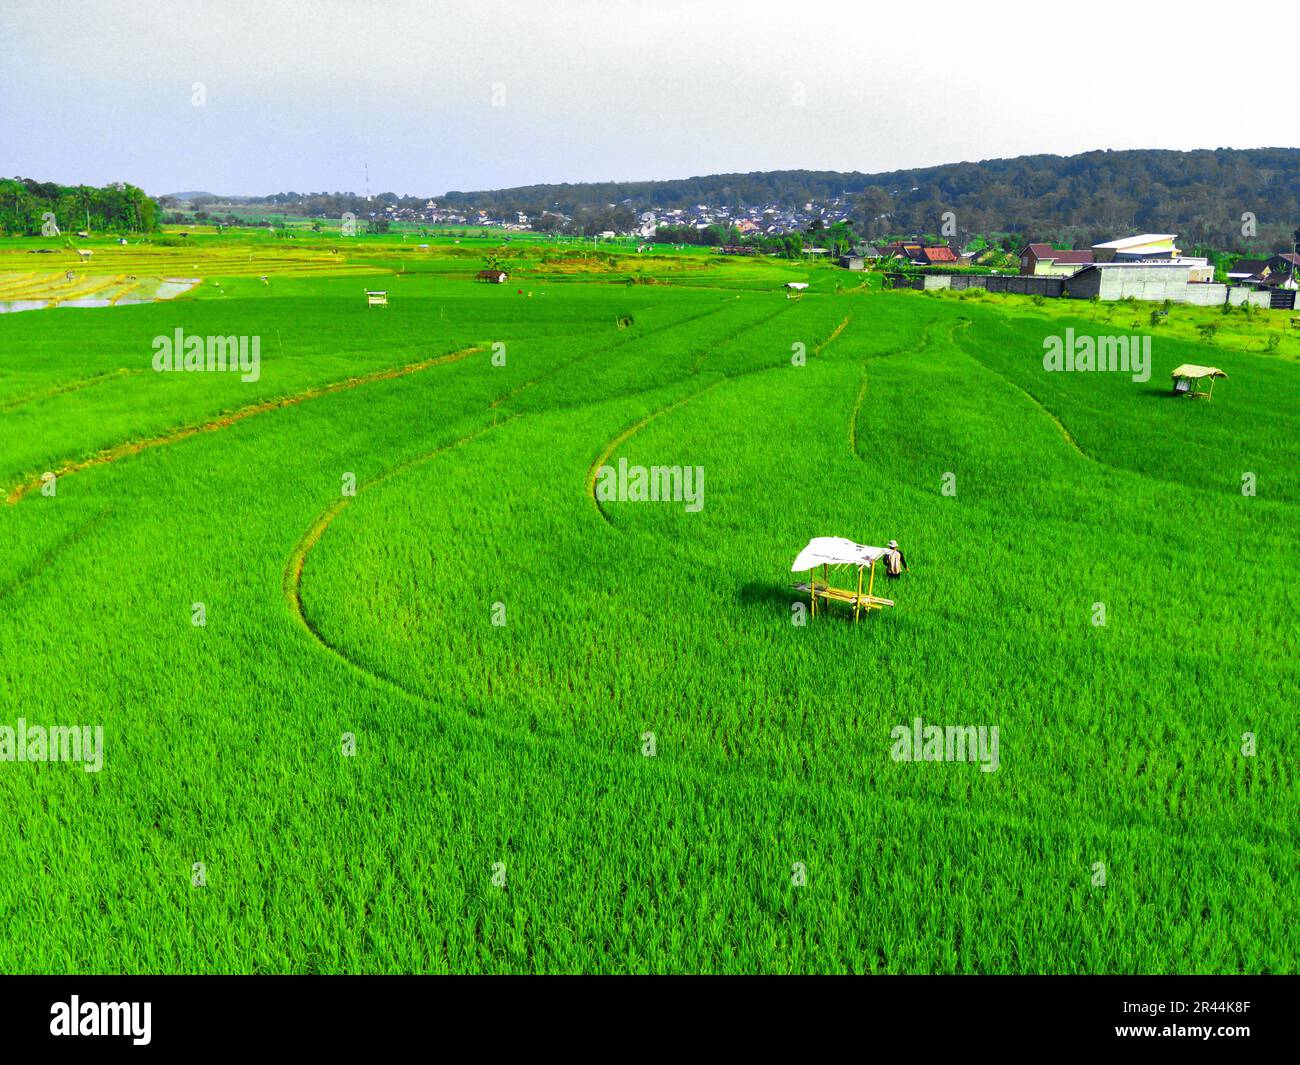 Luftaufnahme auf terrassenförmigen grünen Reisfeldern in Semarang, Indonesien. Drohnenfotografie. Stockfoto